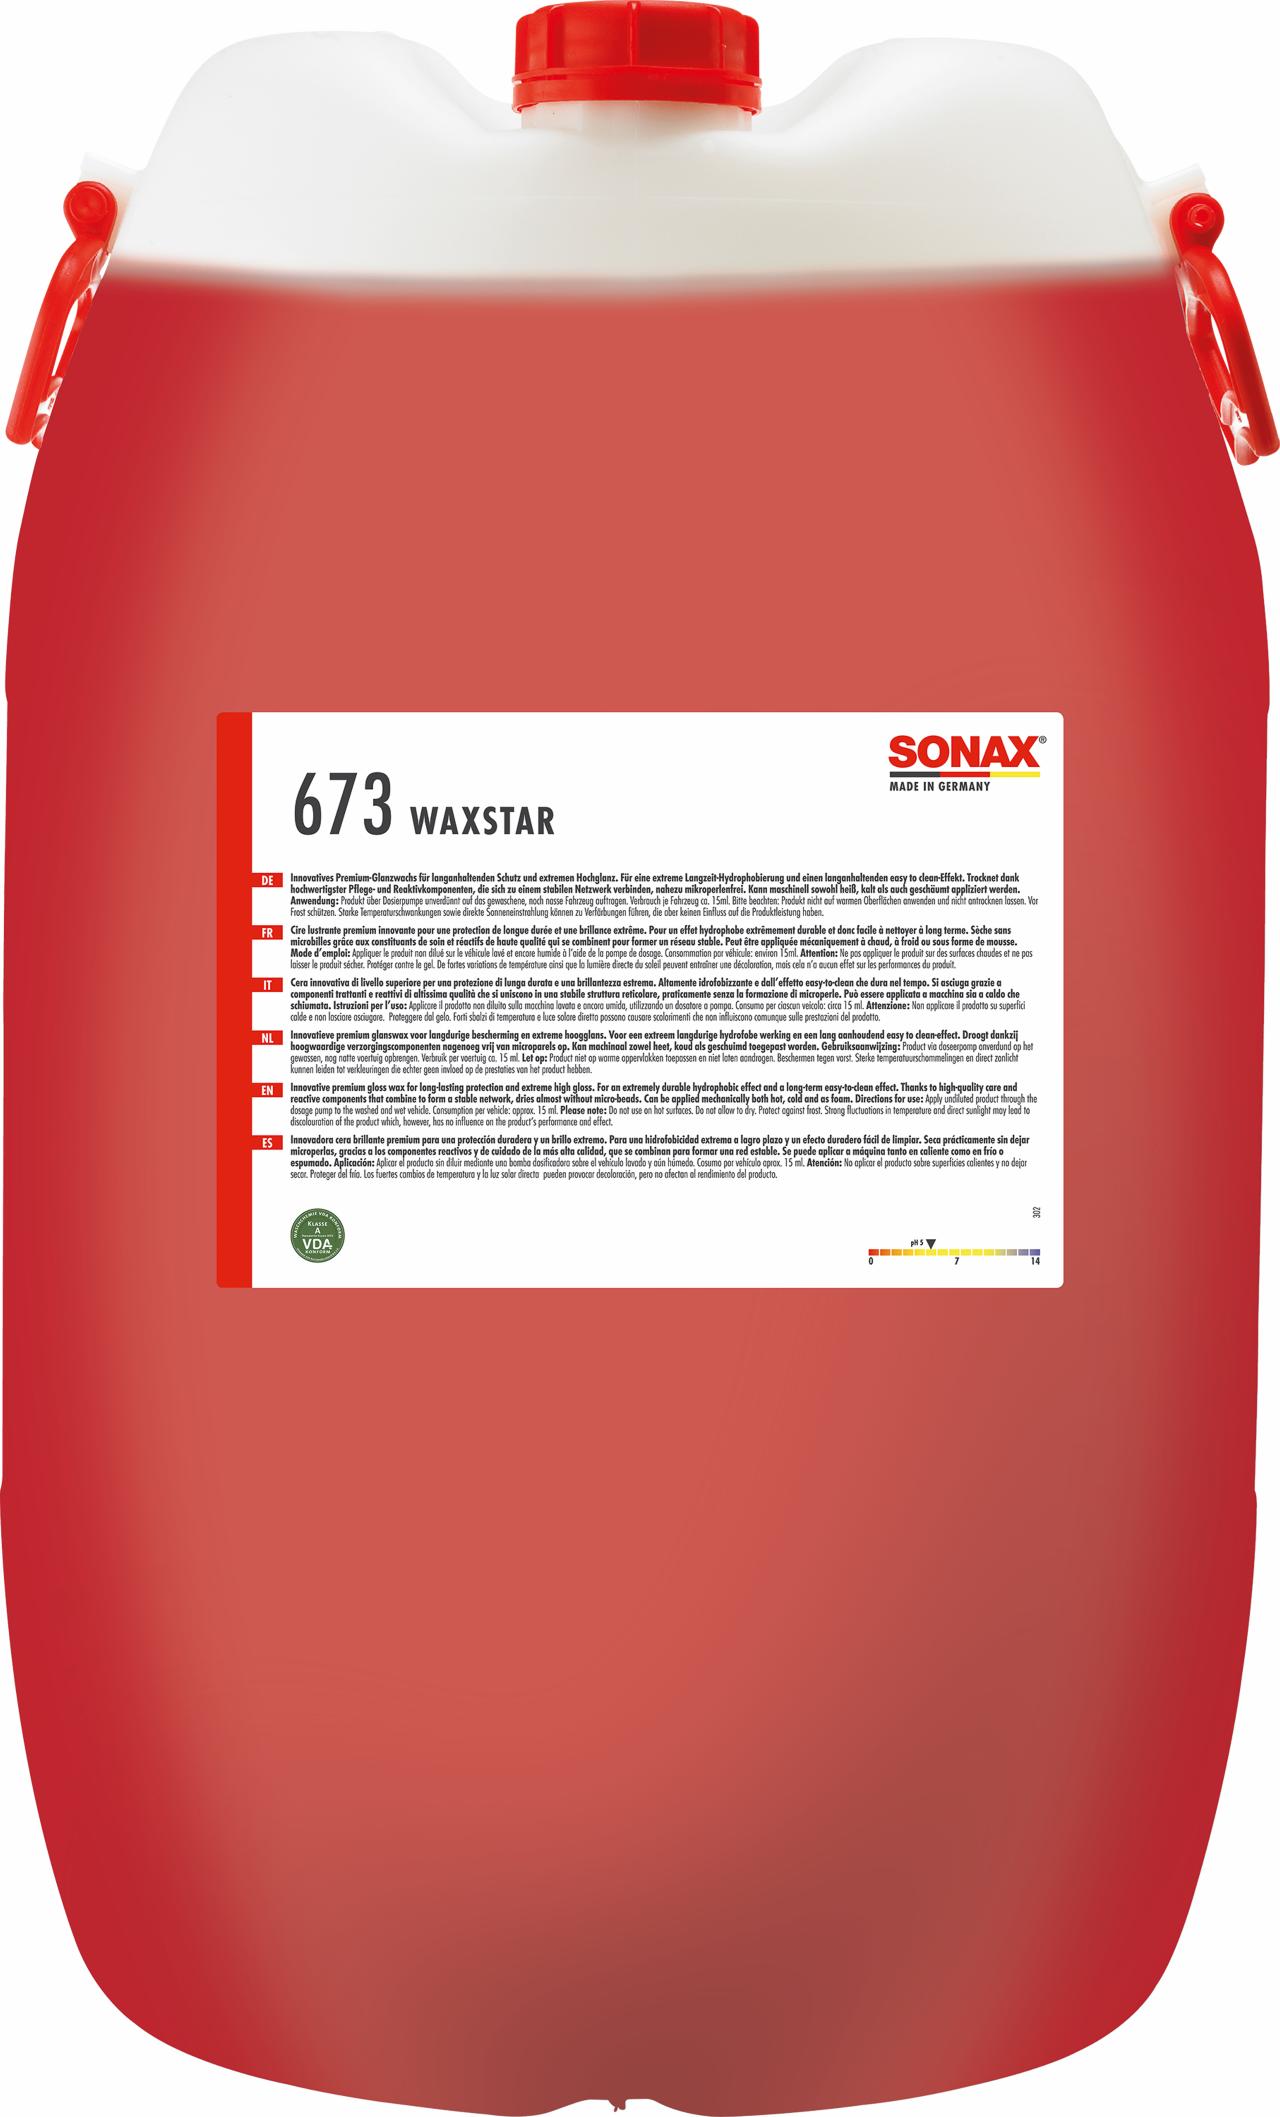 SONAX Waxstar 60L